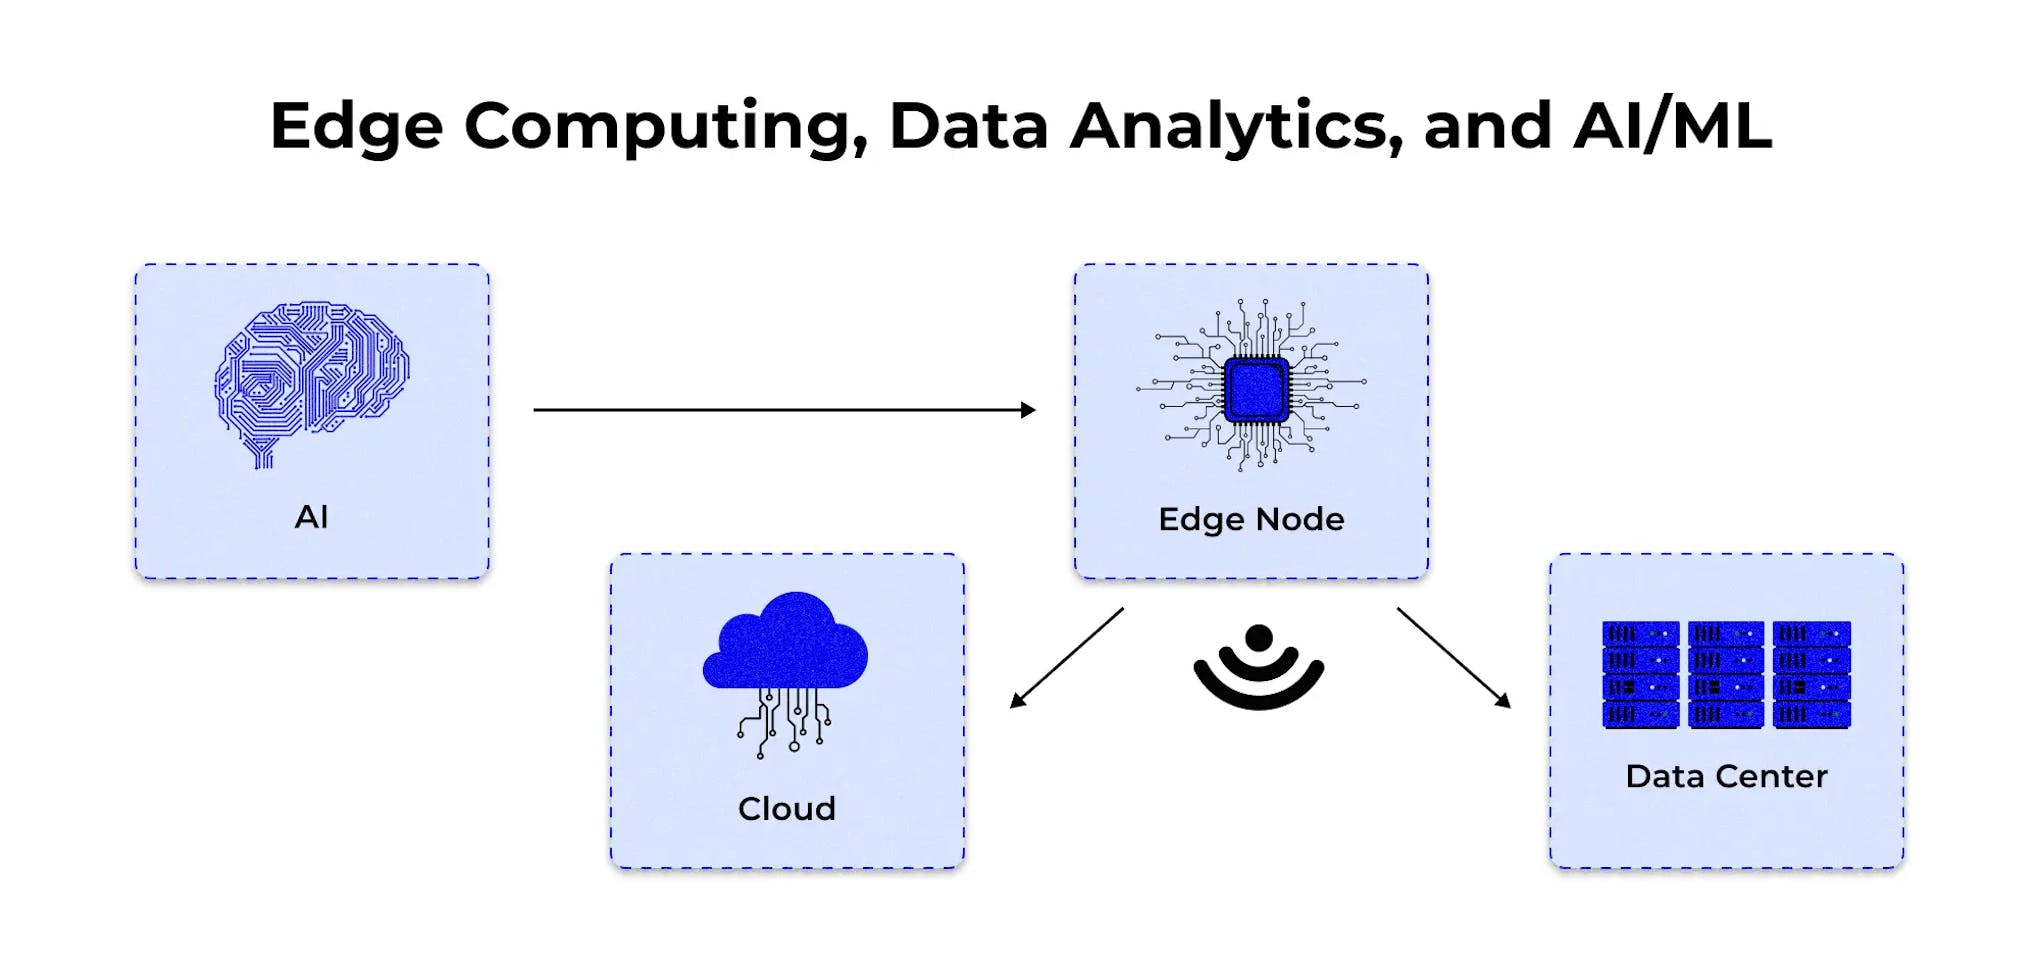 Edge computing, data analytics, and AI/ML